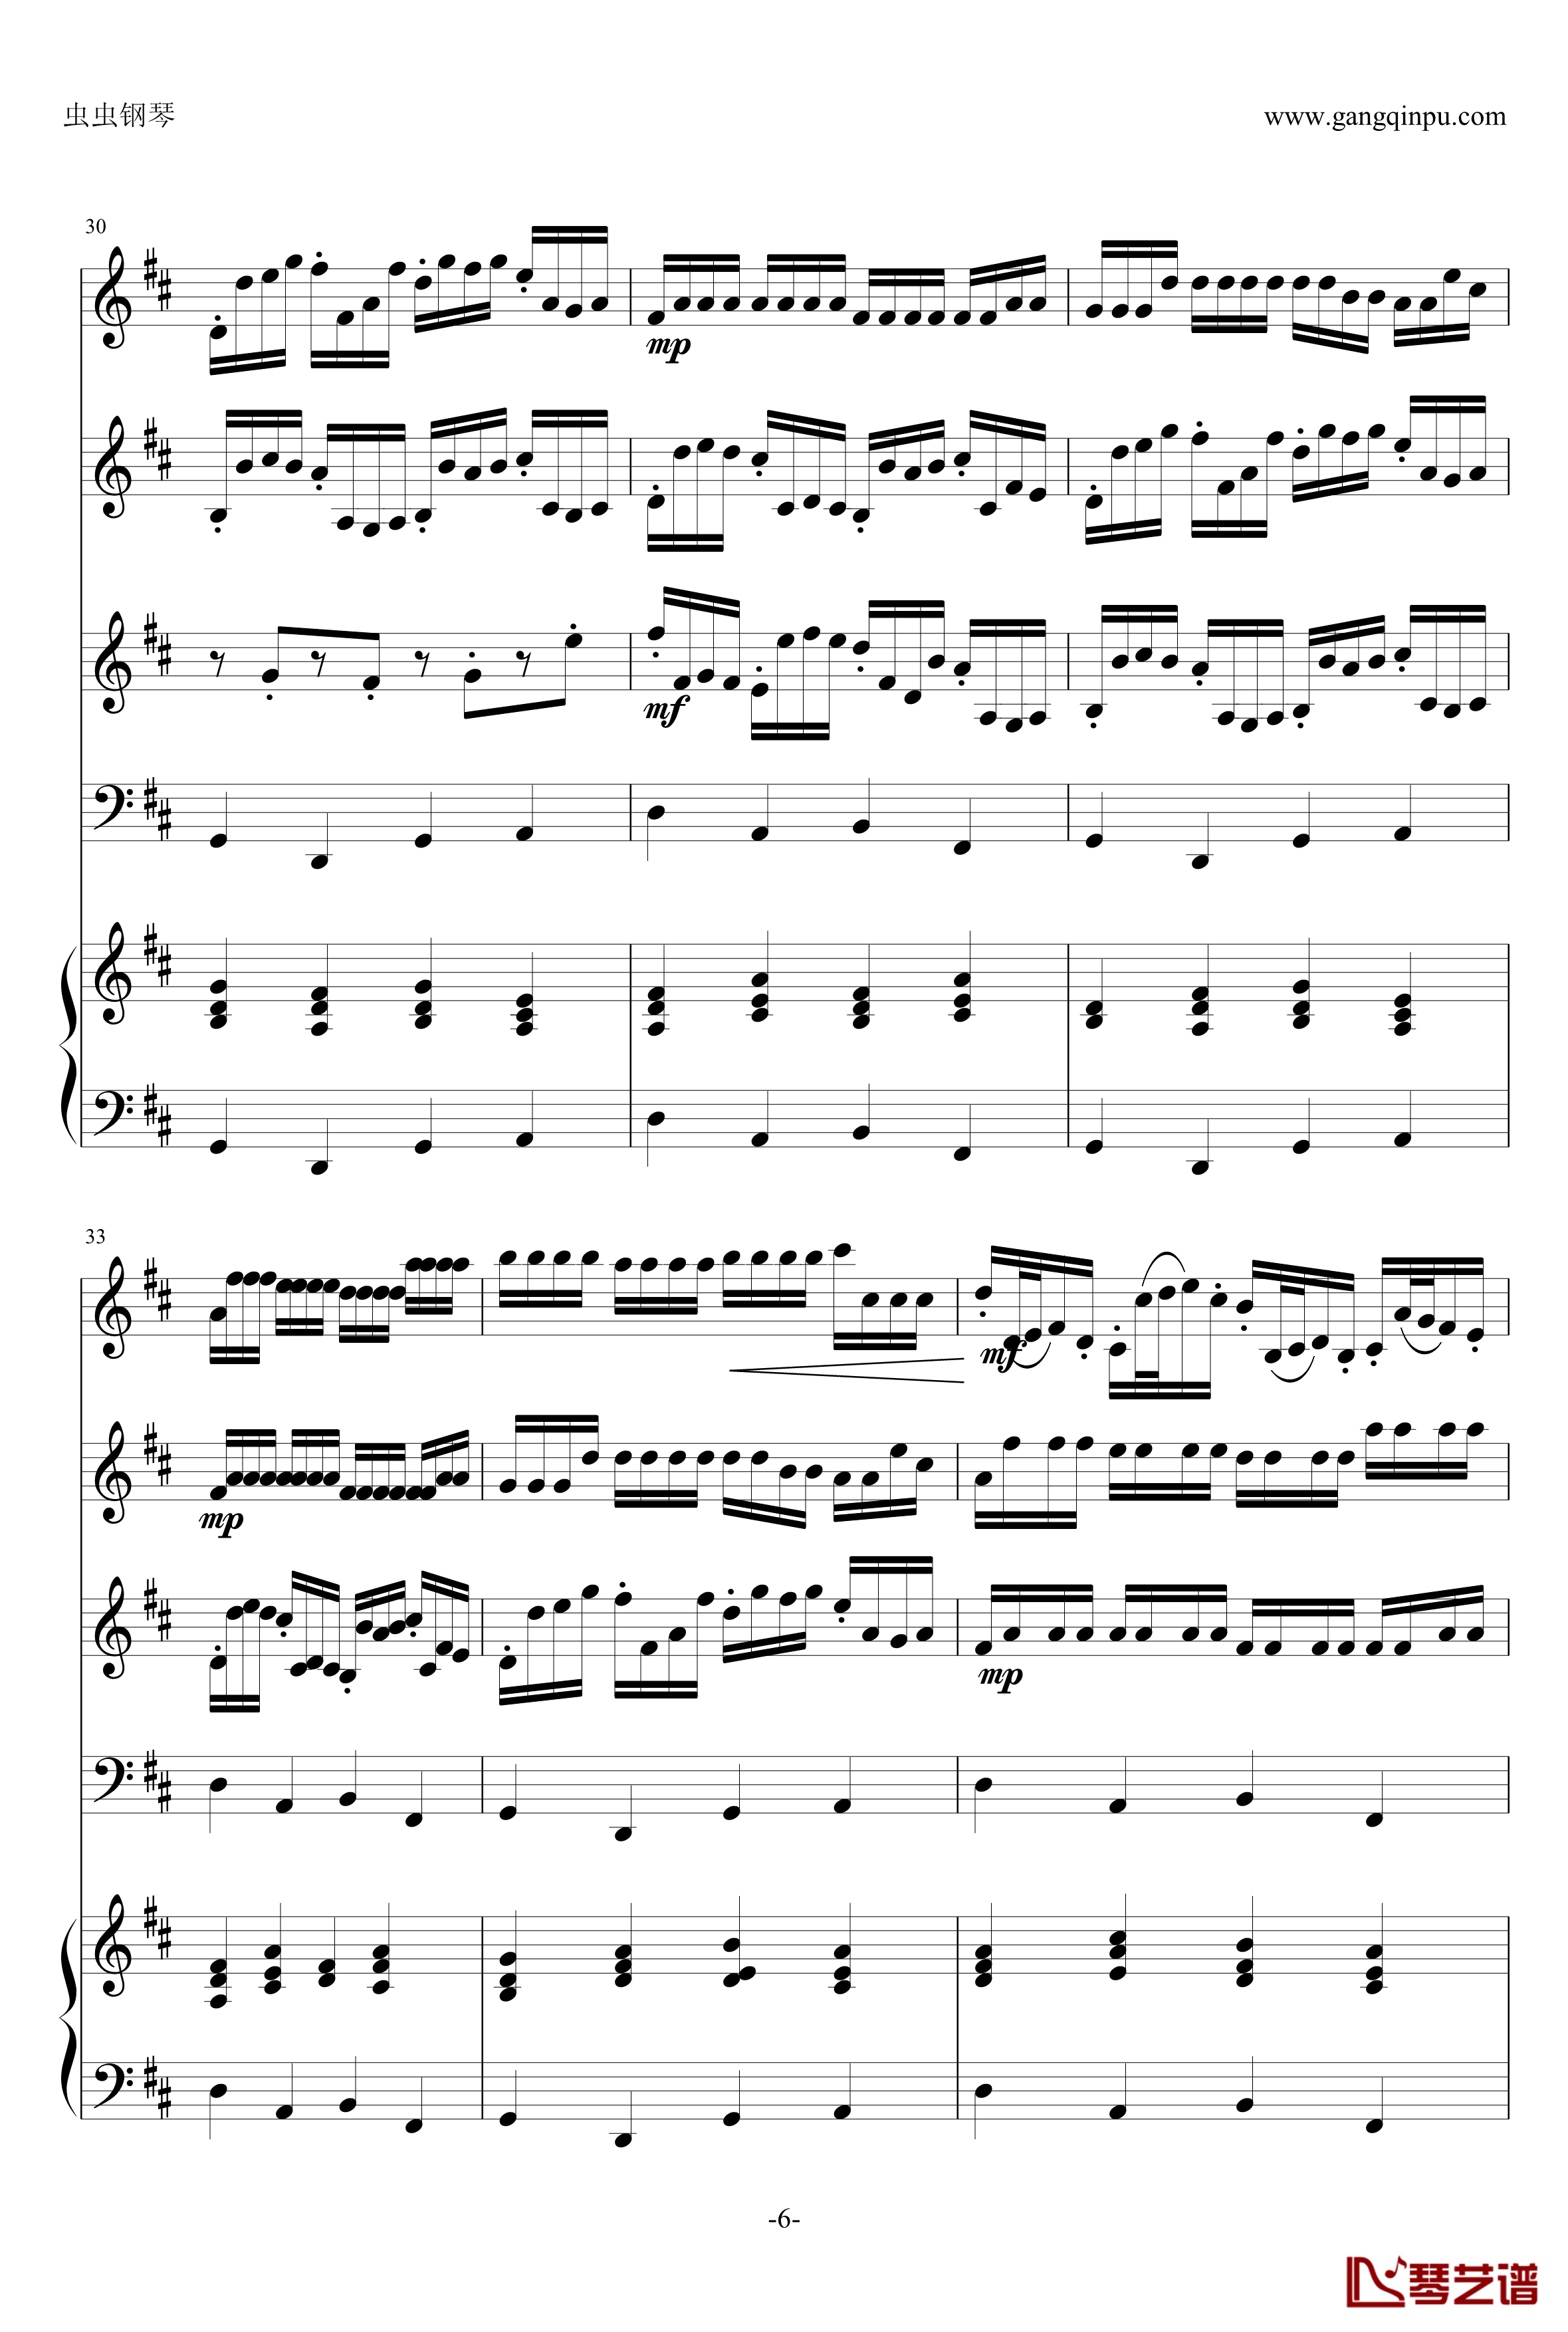 卡农钢琴谱-原版引进-帕赫贝尔-Pachelbel6